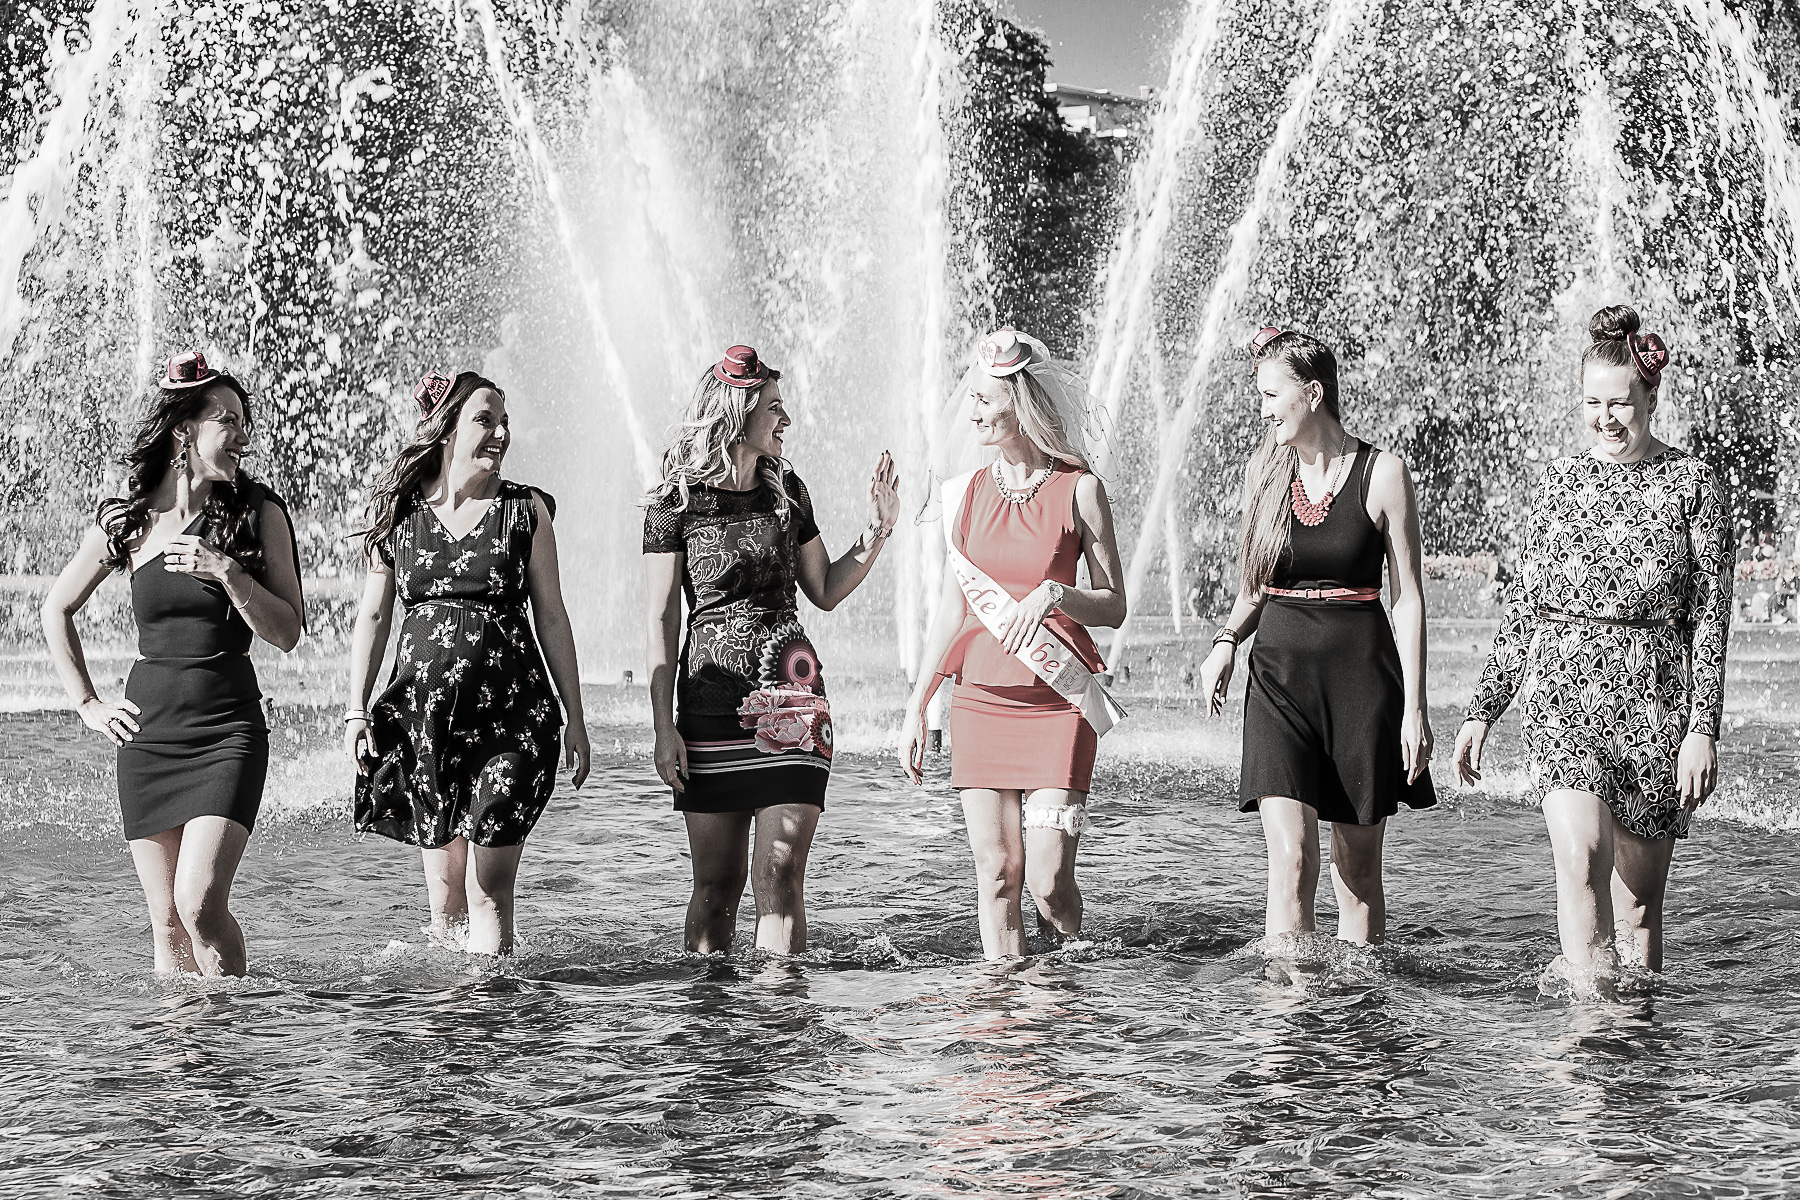 Ein Outdoorgruppenbild von Mädels während eines Jungesellenabschieds. Die Junggeselebnbraut und ihre Mädels laufen knietief im Wasserbecken auf die Kamera zu, während sie sich gegenseitig anschauen. Im Hintegrund sind Fontänen sichtbar.